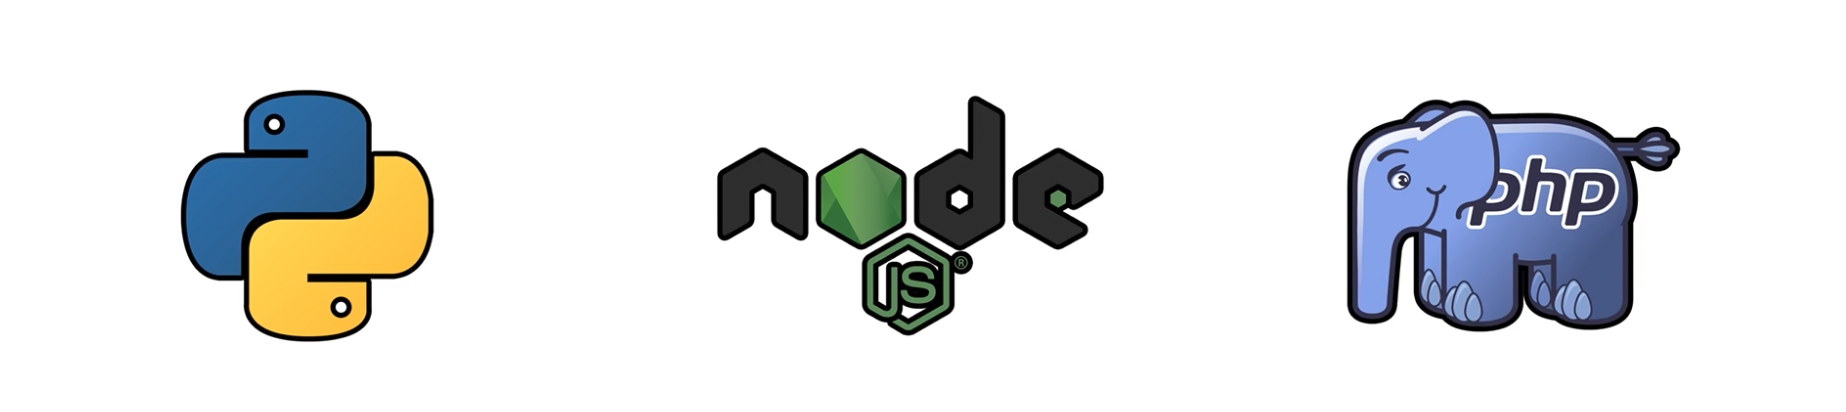 Banner com logo do python node e php (Linguagens de programação)